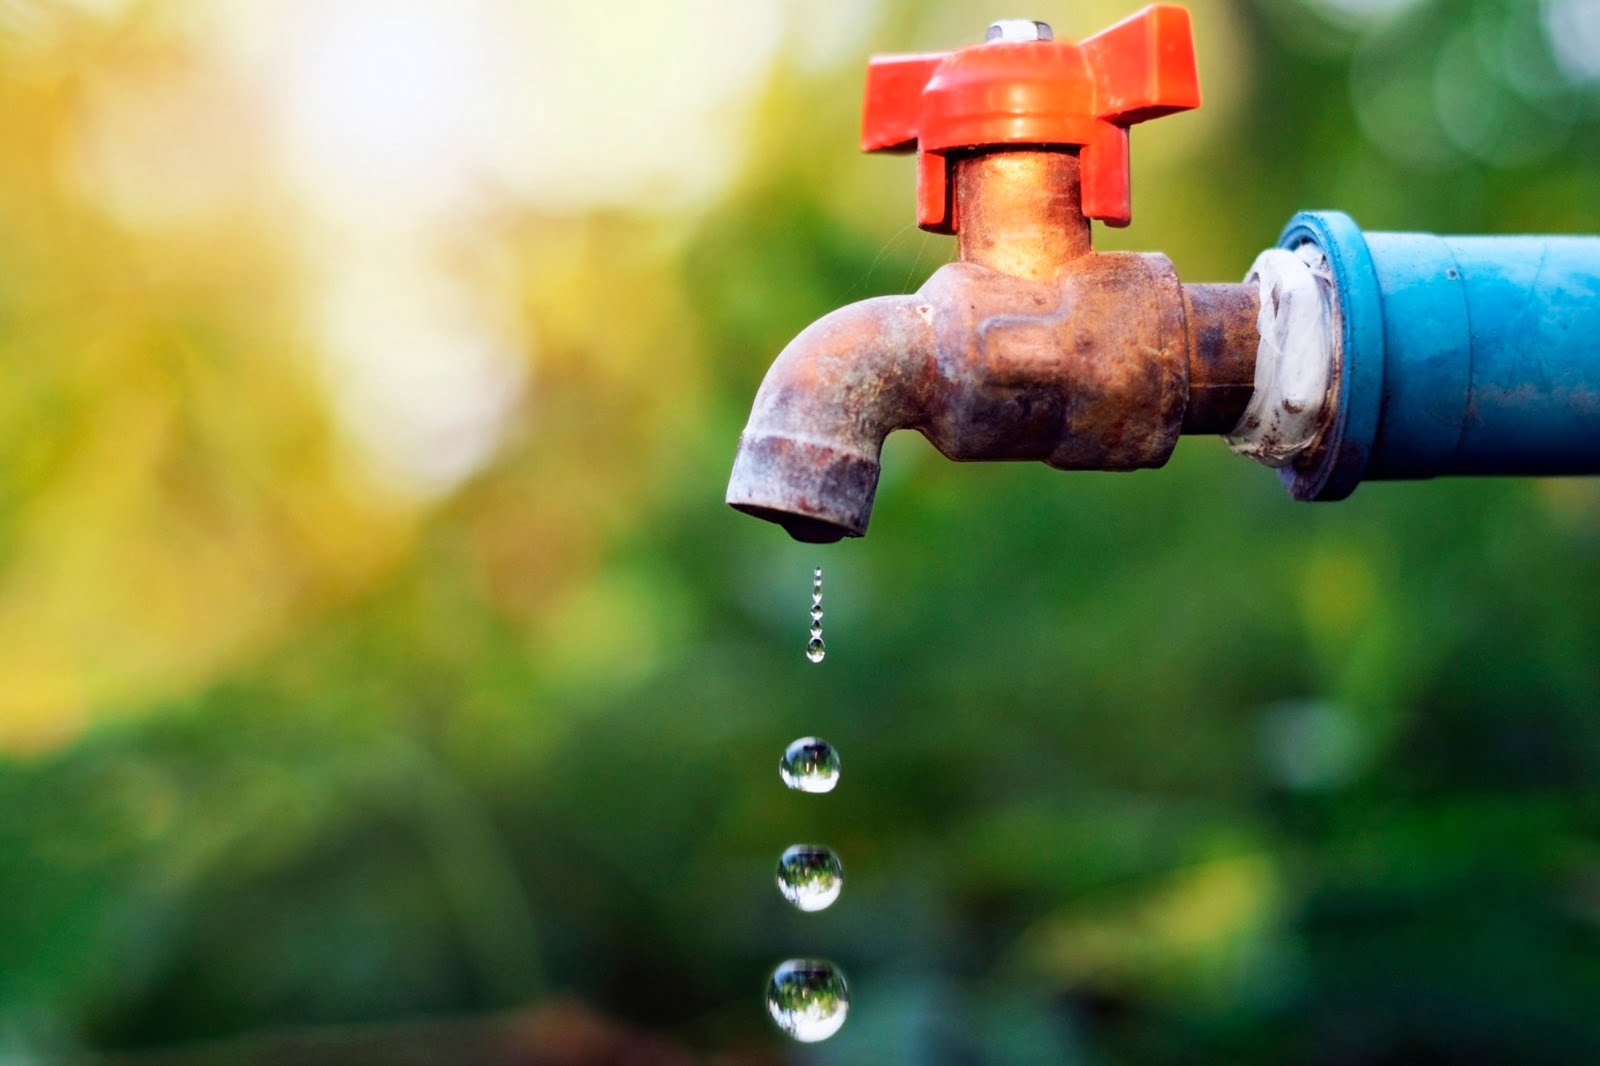 DIA MUNDIAL DA ÁGUA: 2,1 bilhões de pessoas não têm acesso à água potável no mundo